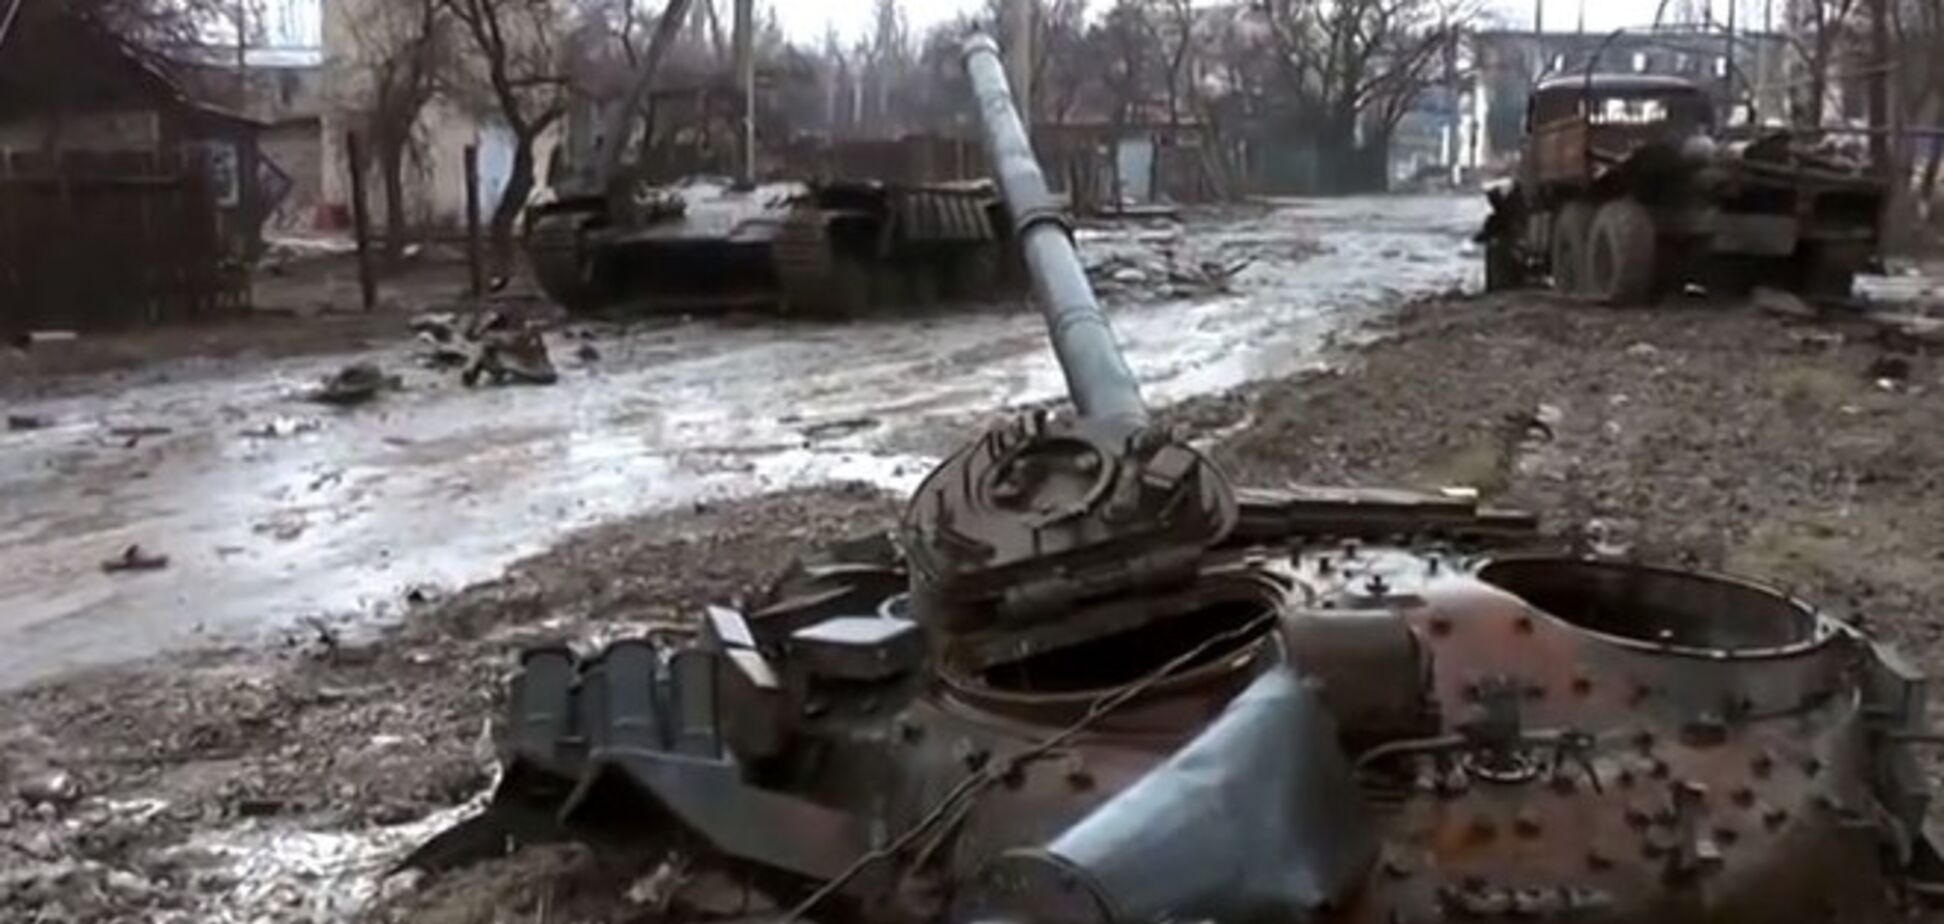 Углегорск стал городом-призраком, на улицах разбитая бронетехника, жилые дома разрушены: видеофакт 